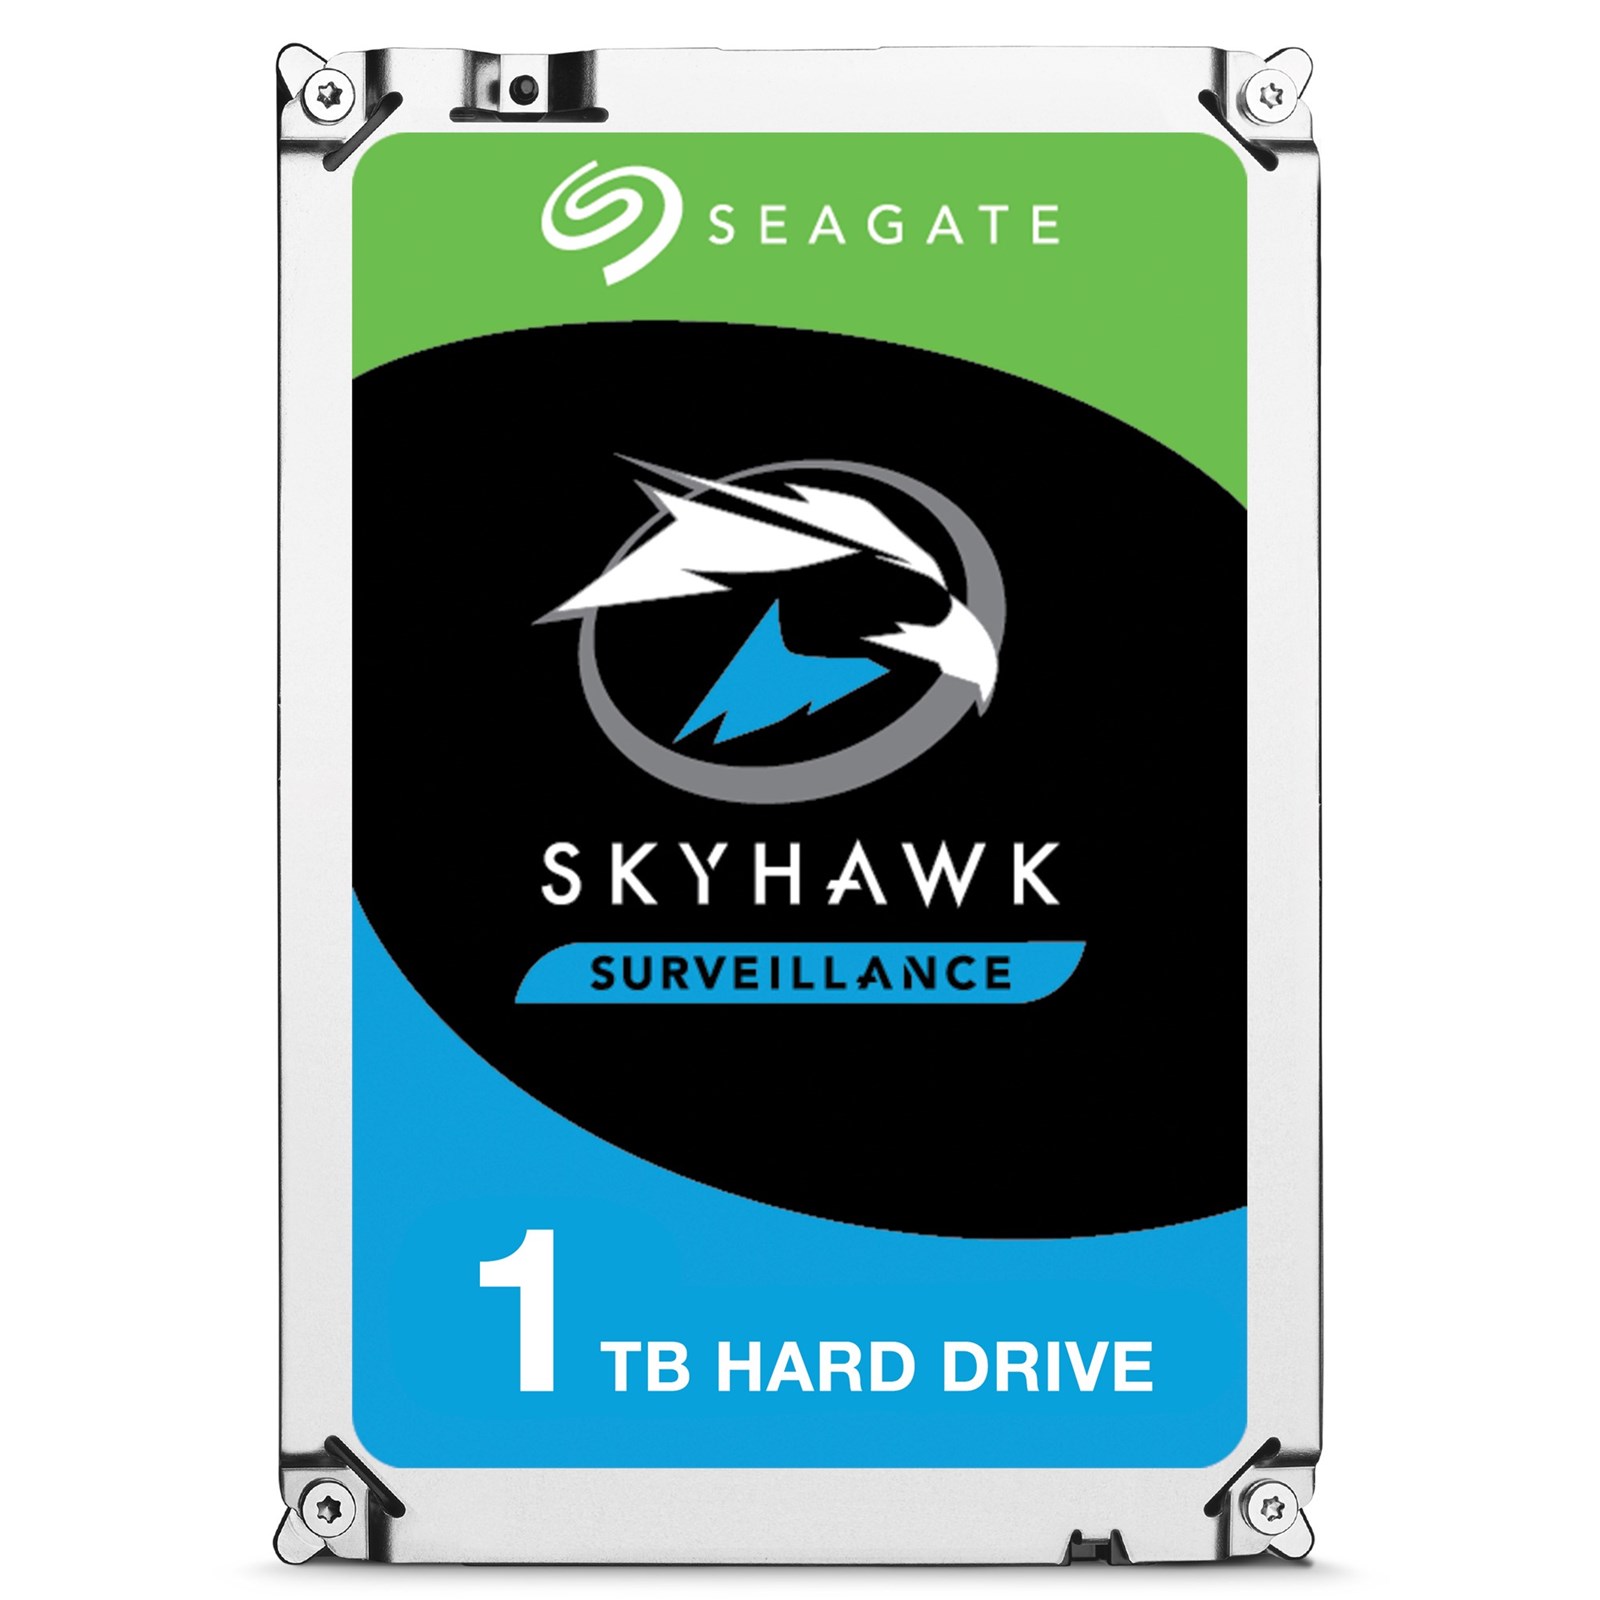 Seagate%20Skyhawk%20ST1000VX005%201tb%205900rpm%2064mb%20sata3%206Gbit/sn%207/24%20HDD